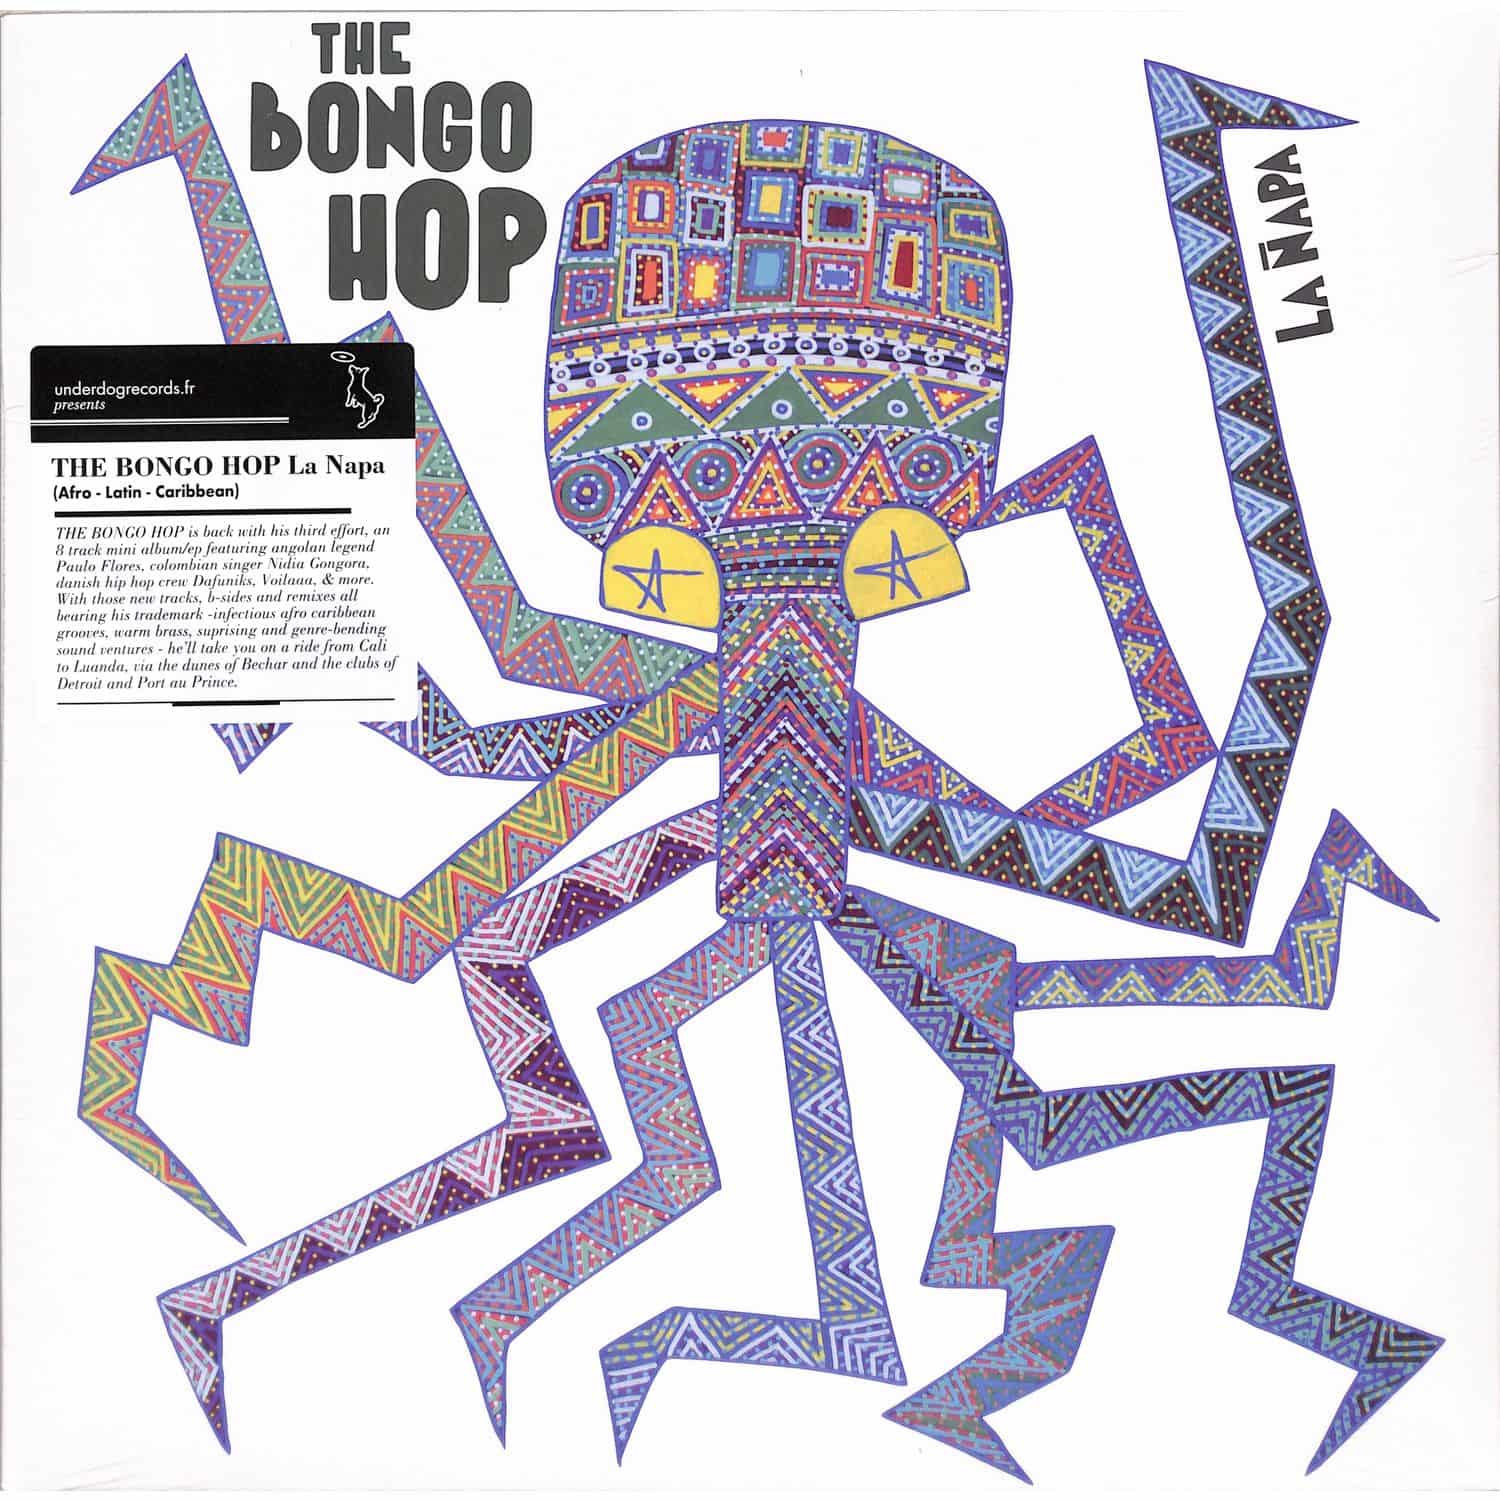 The Bongo Hop - LA NAPA 